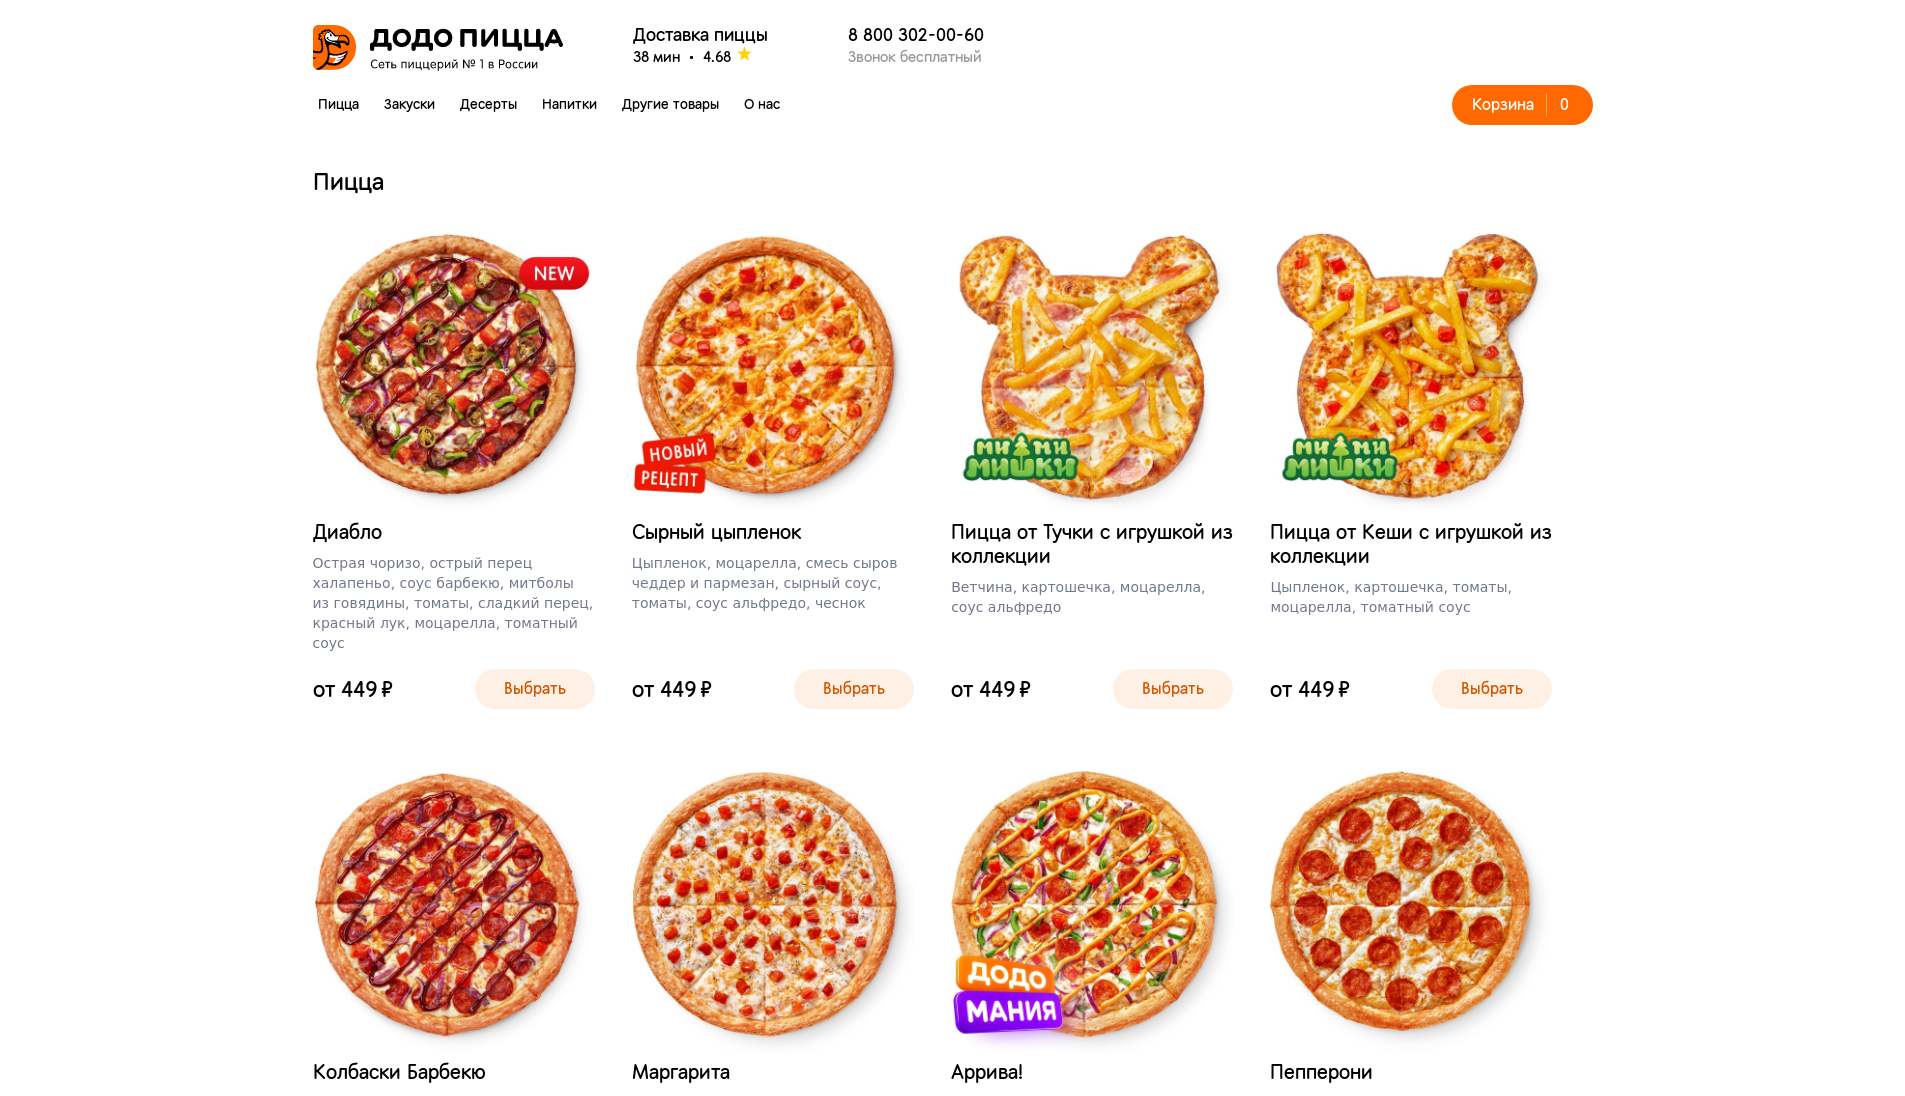 Додо пицца апрель. Додо пицца Размеры пицц. Технологическая карта Додо пицца. Структура Додо пицца. Размеры пиццы в Додо.